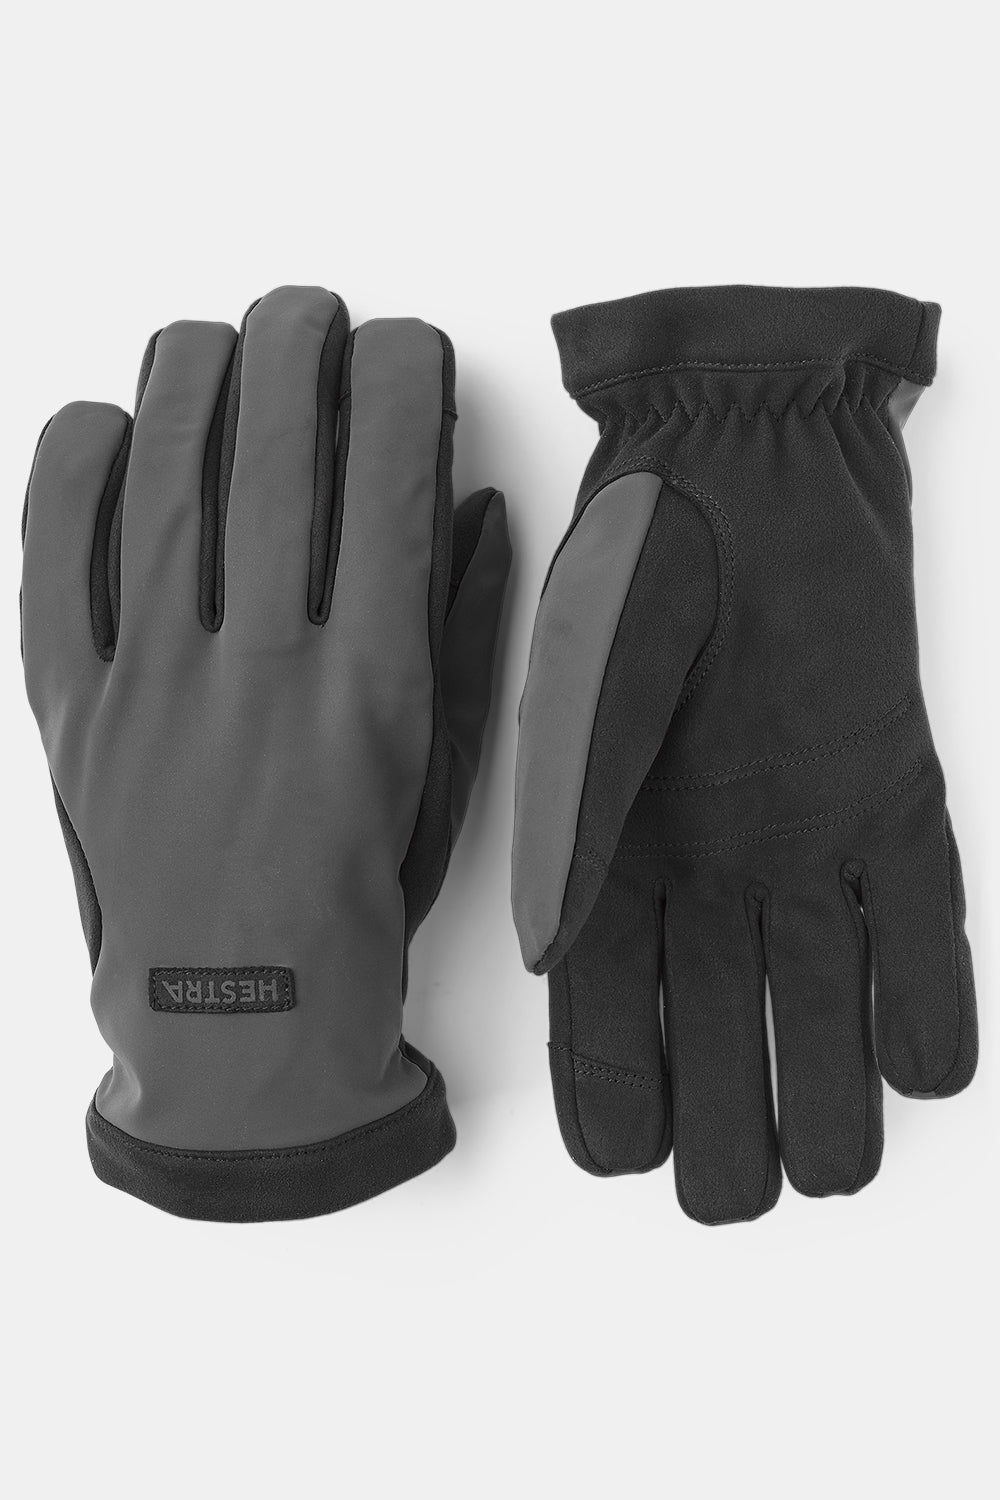 Hestra Mason Gloves (Dark Grey/Black)
